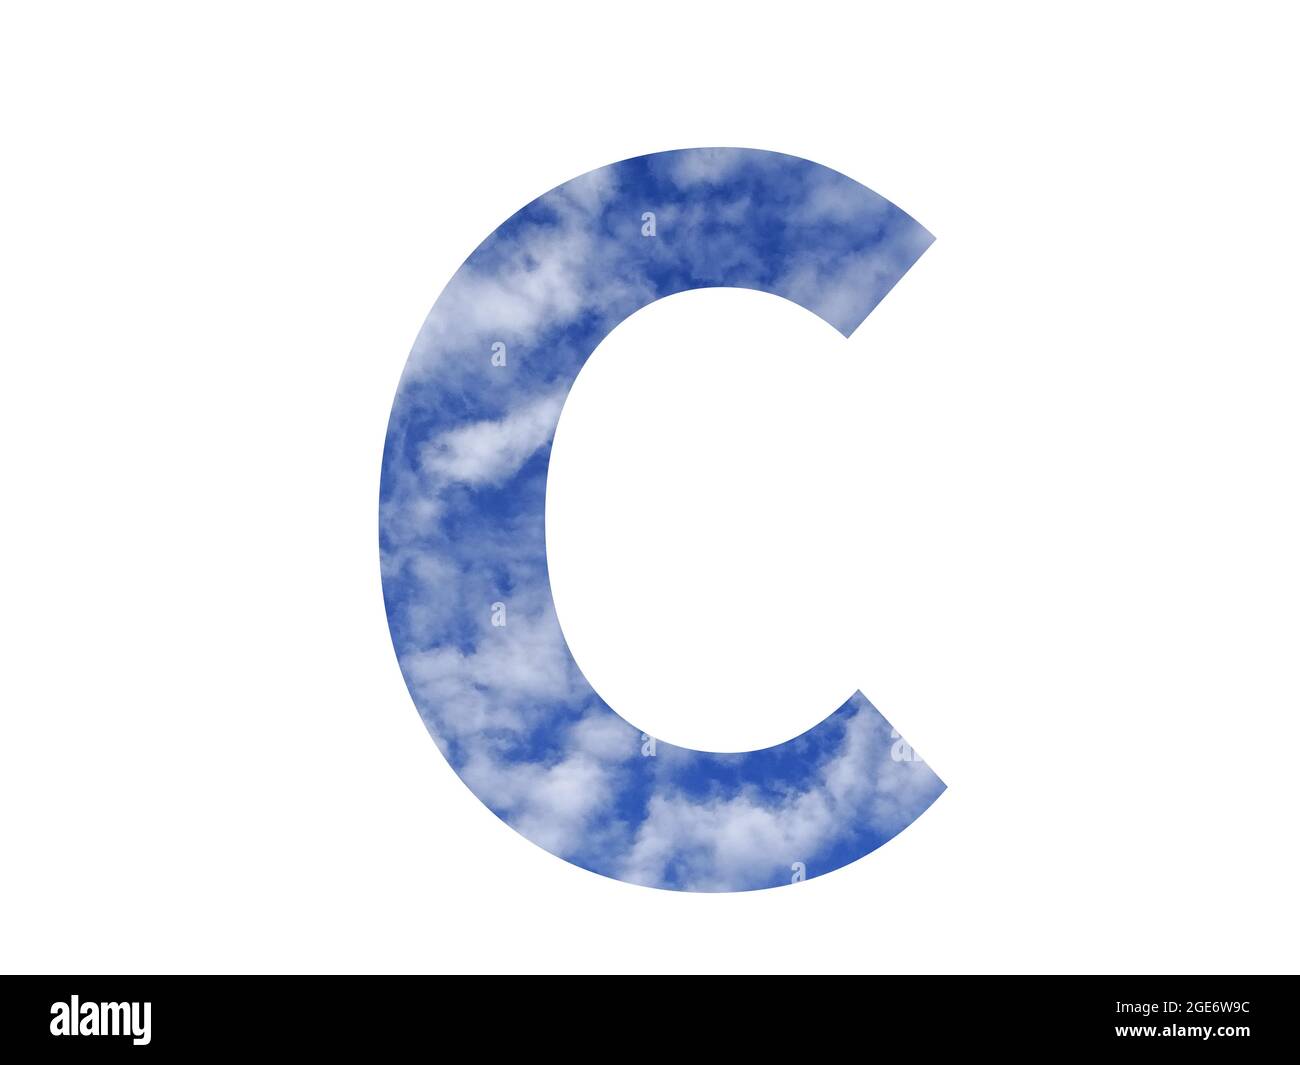 Lettera C dell'alfabeto fatta con cielo blu e nuvole bianche, isolata su sfondo bianco Foto Stock